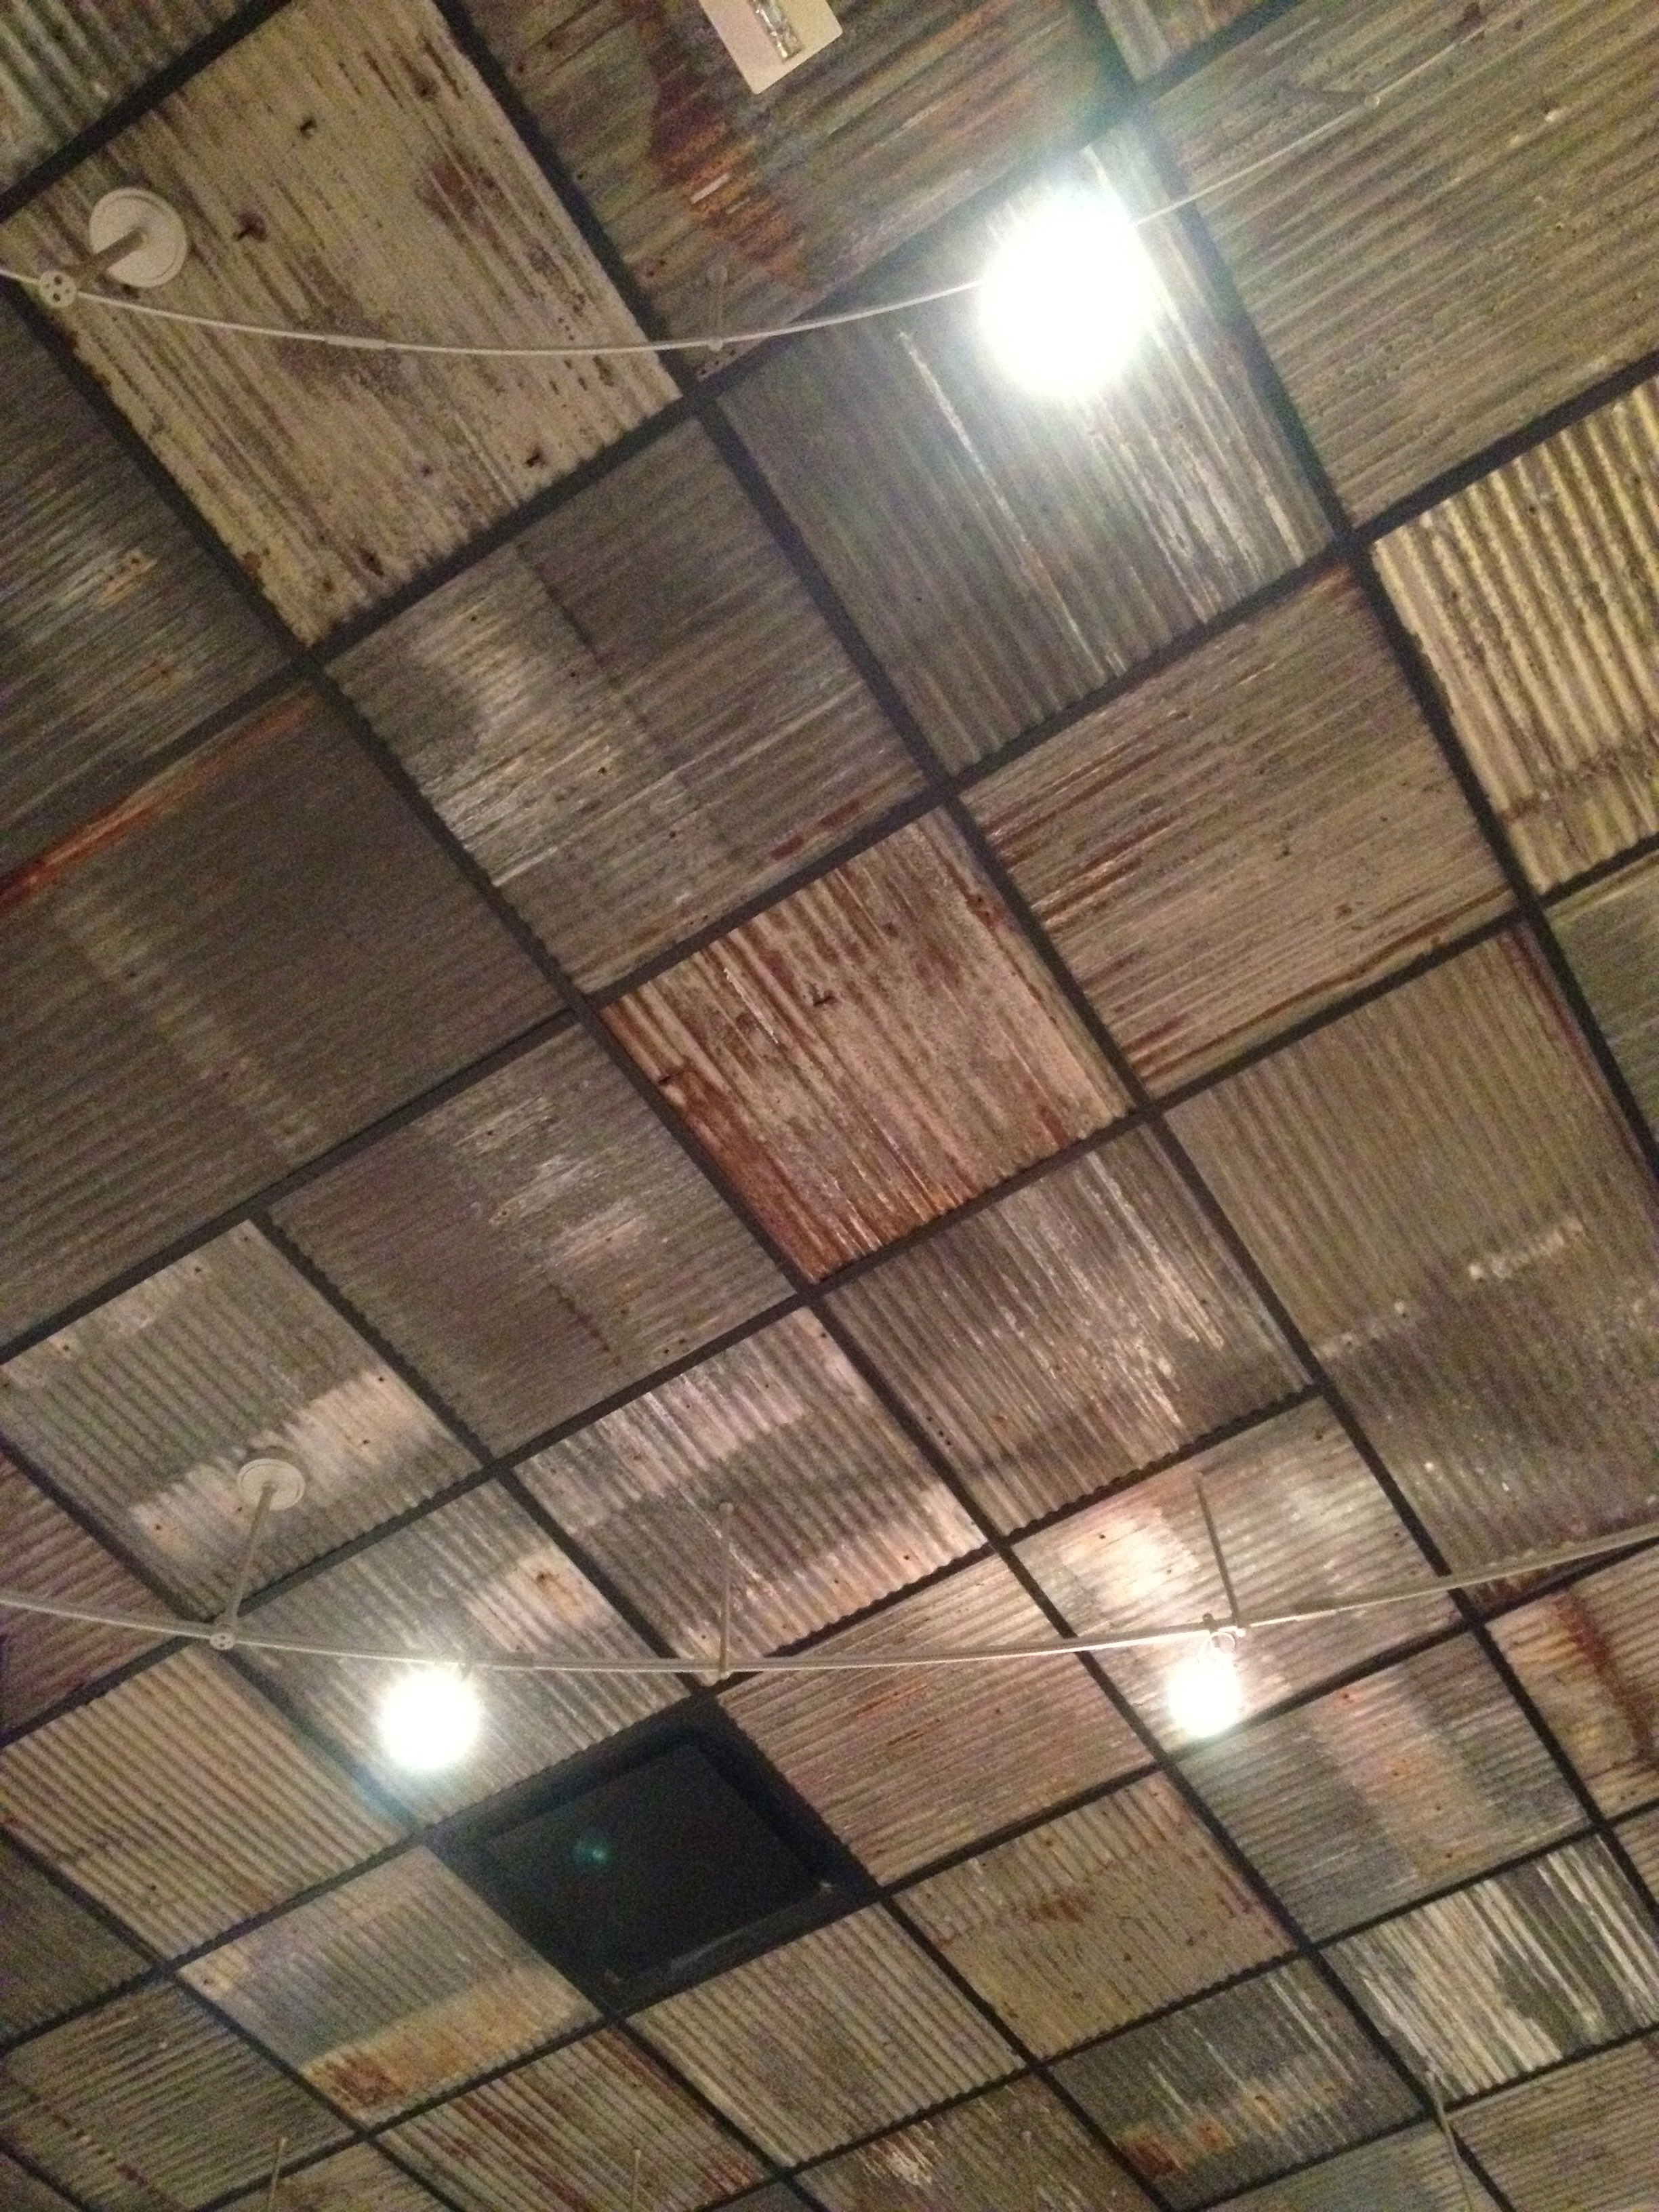 Metal Drop Ceiling Tiles Metal Drop Ceiling Tiles drop ceiling tiles metal ceiling tiles 2448 X 3264